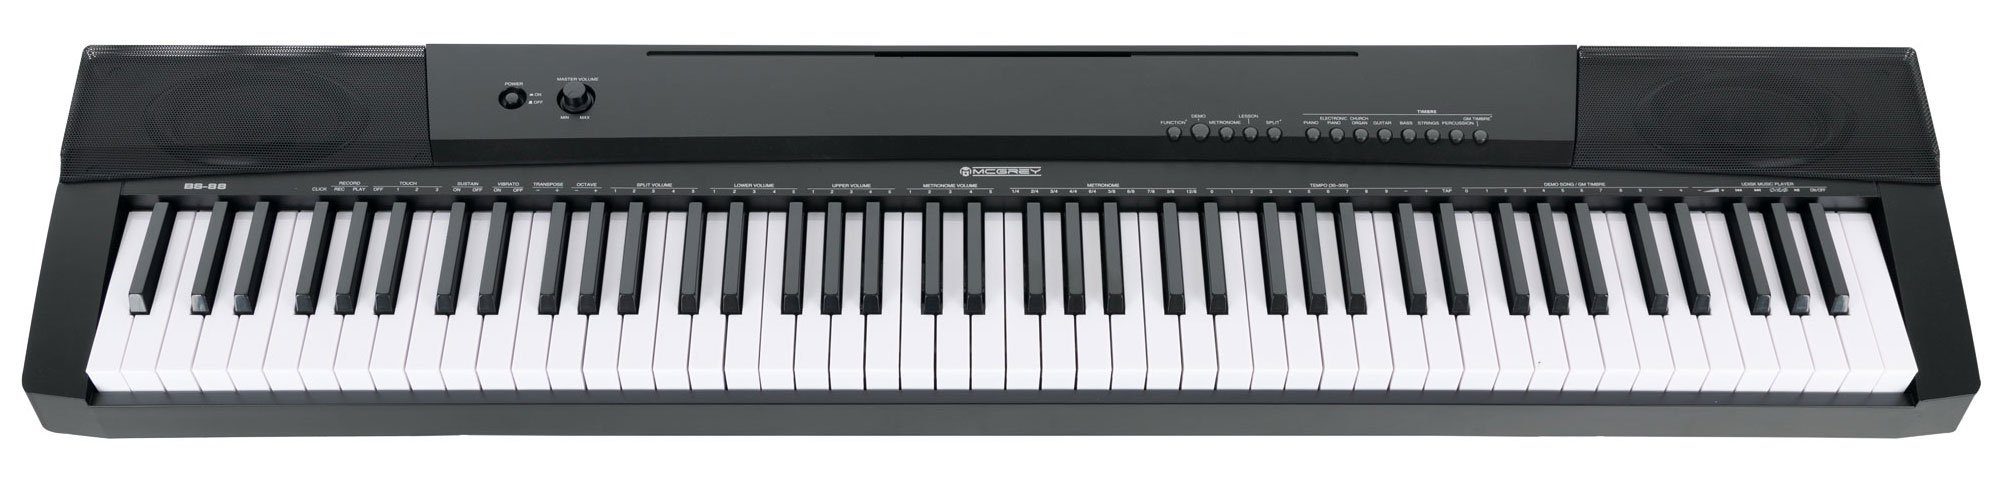 McGrey Home Keyboard BS-88 - 88 Tasten Einsteiger-Keyboard in Stagepiano-Optik, (inkl. Sustain-Pedal), 146 Sounds, USB to Host Aufnahme-, Split-, Dual- und Twinova-Funktion